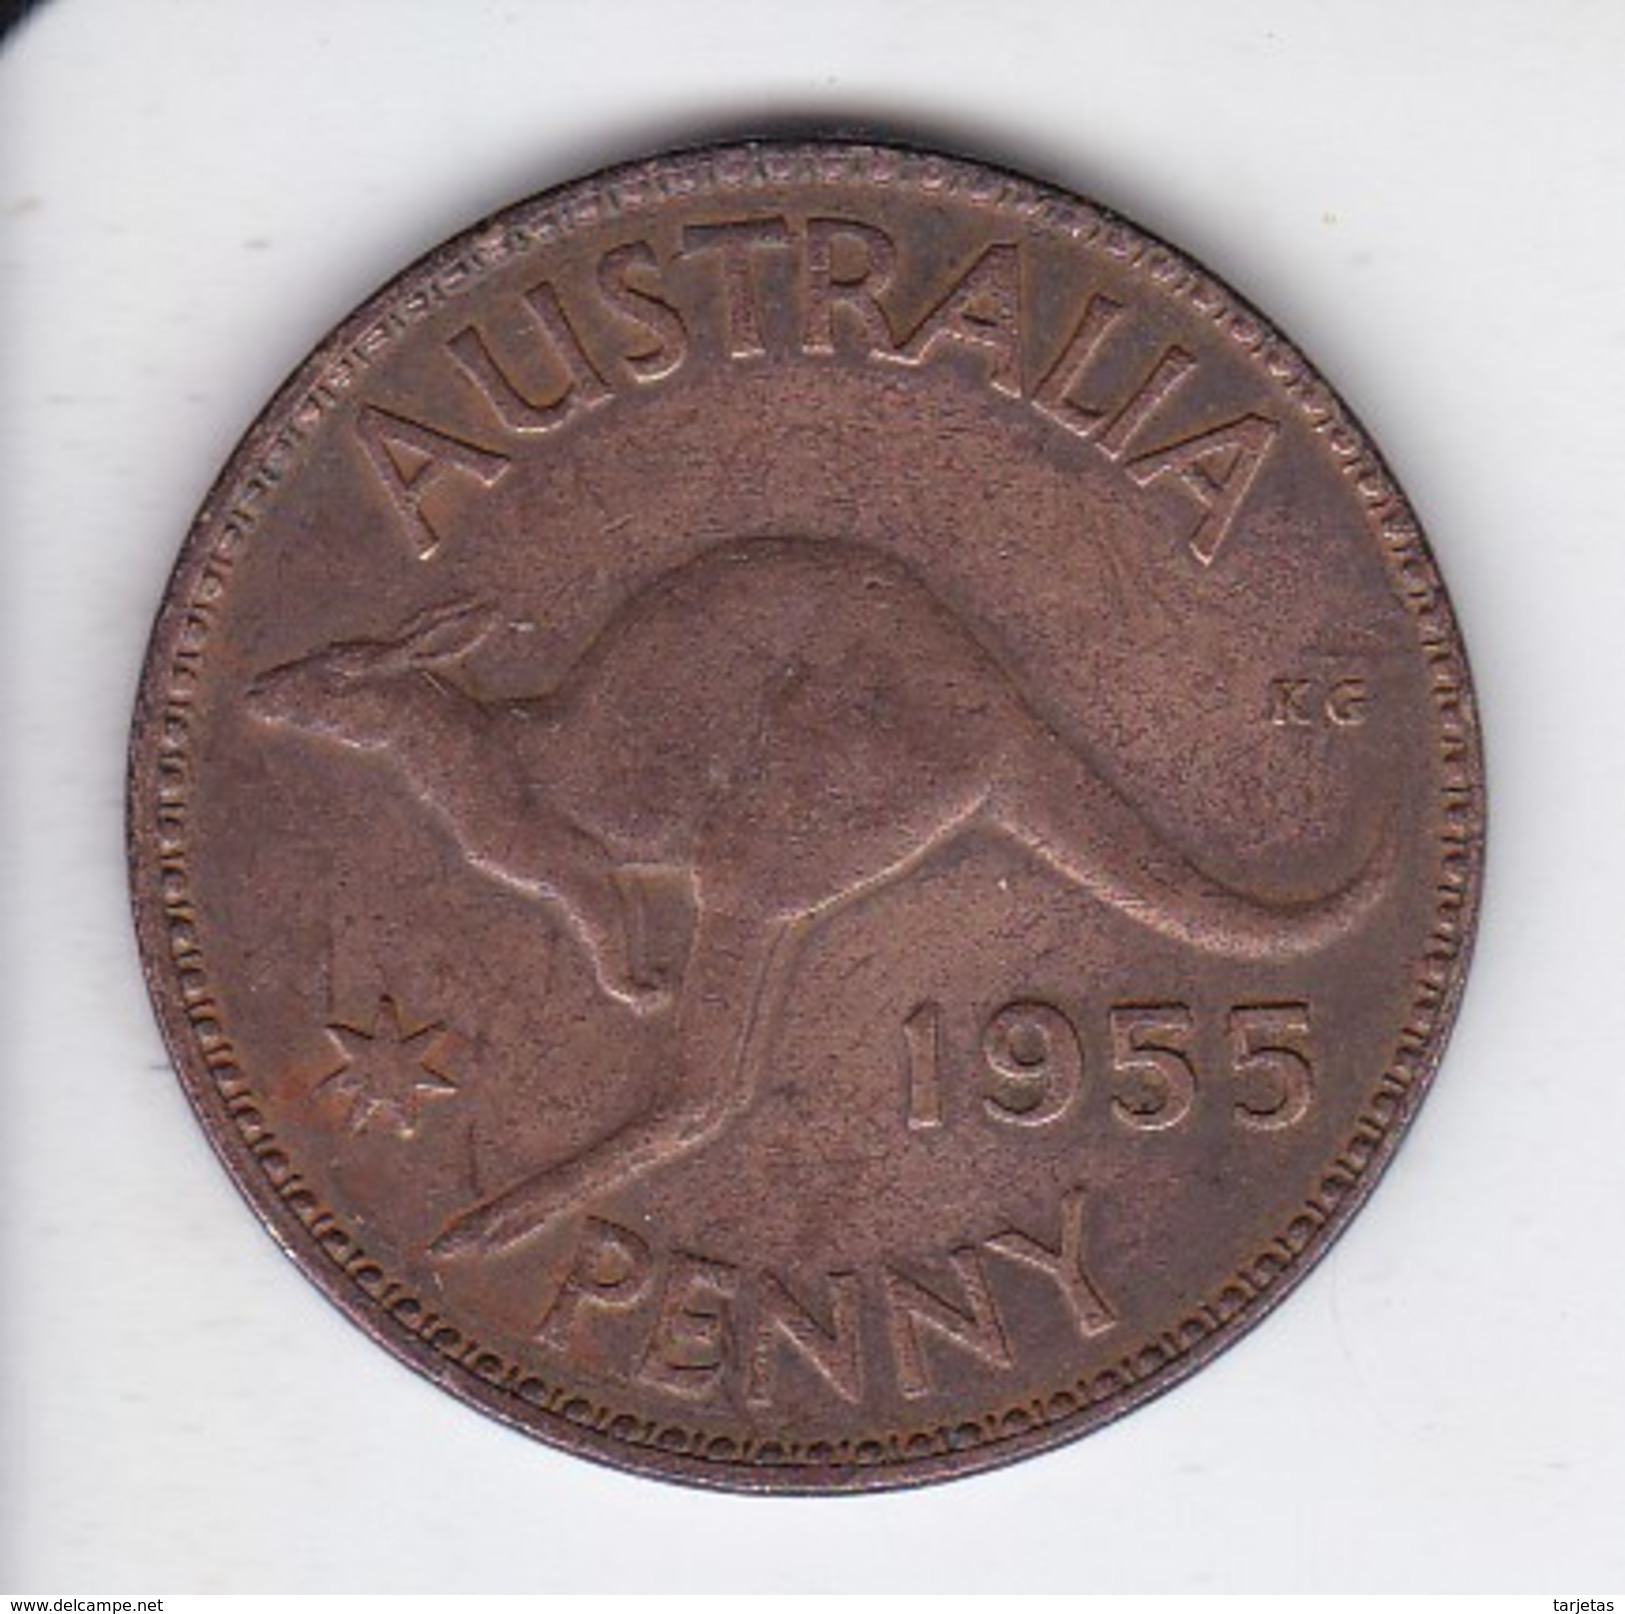 MONEDA DE AUSTRALIA DE 1 PENNY DEL AÑO 1955 CANGURO (KANGAROO) - Penny